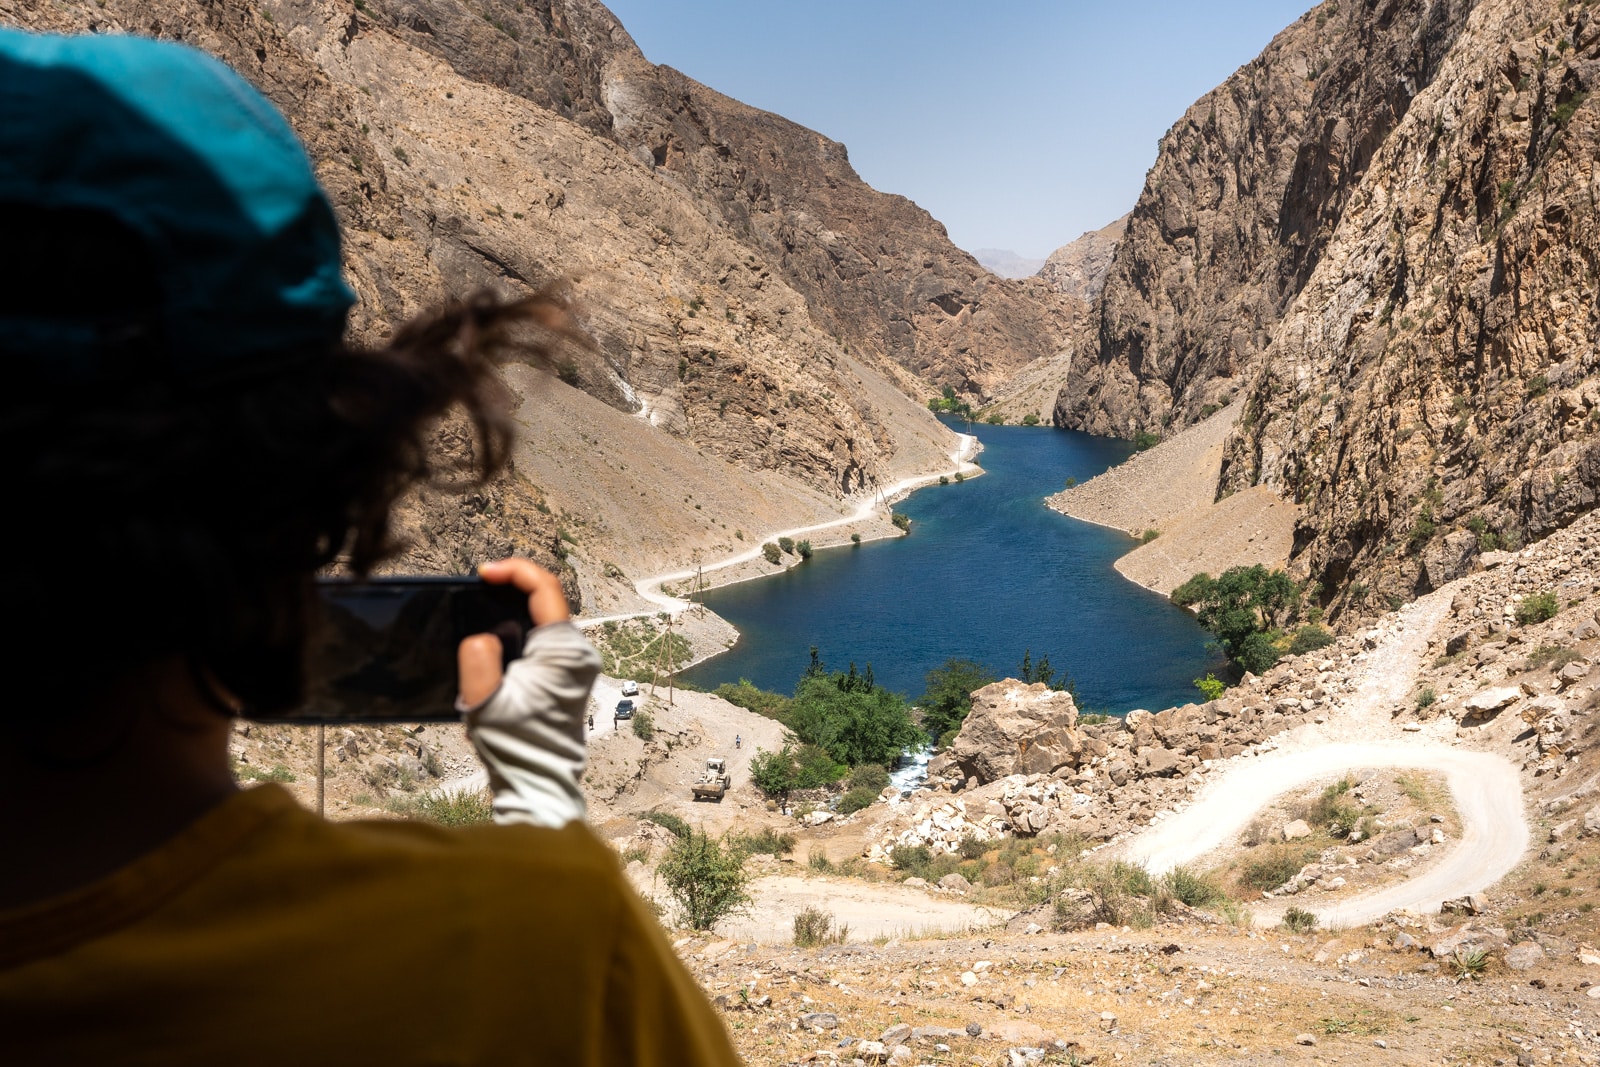 Road to the Haft Kol in Tajikistan